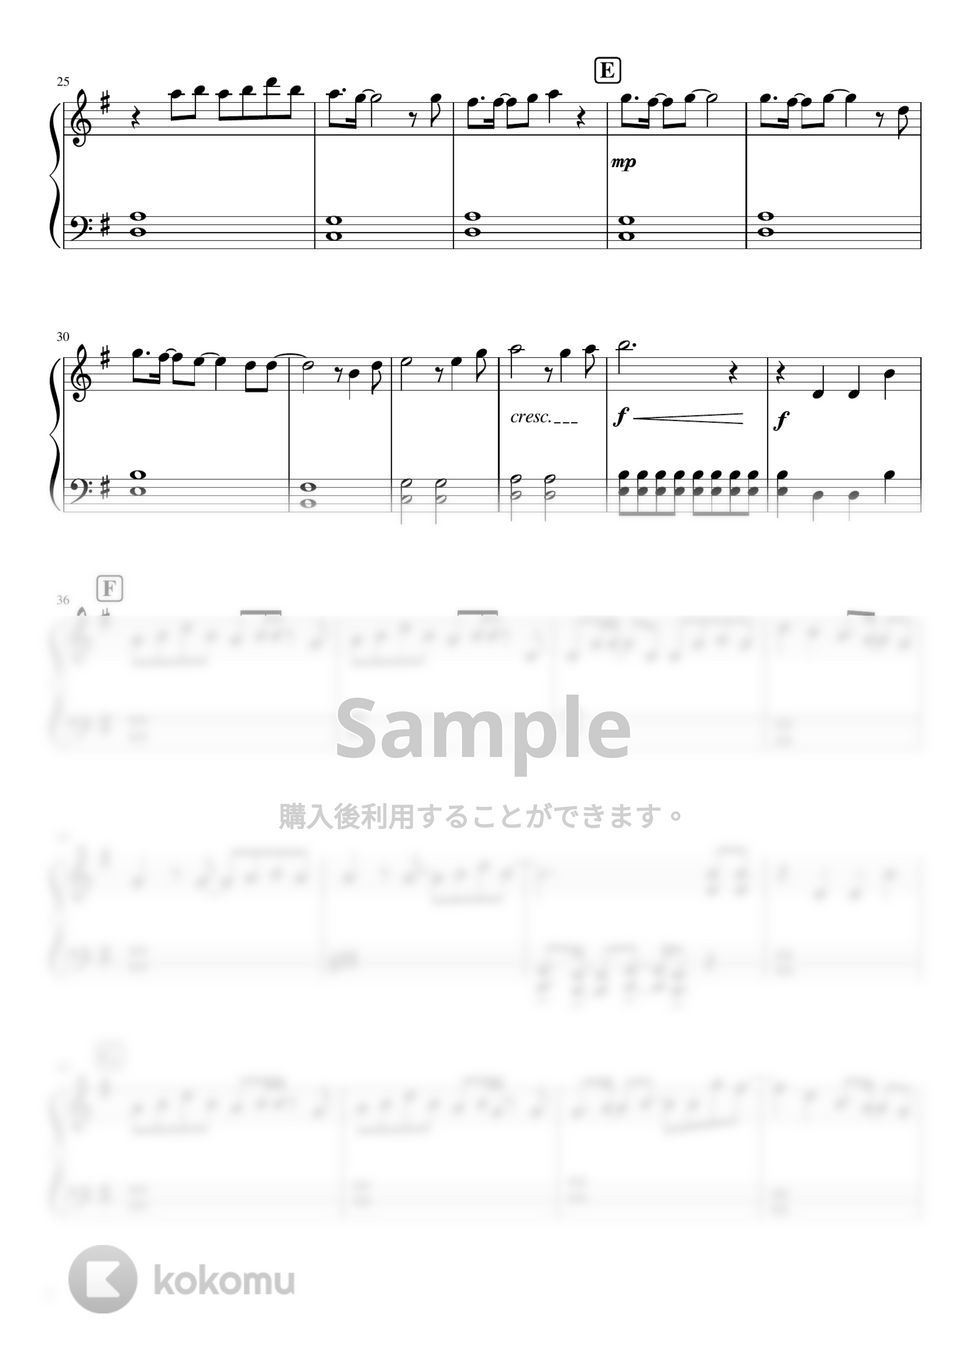 鬼滅の刃 - 紅蓮華 (ピアノソロ初級レッスン) by orinpia music